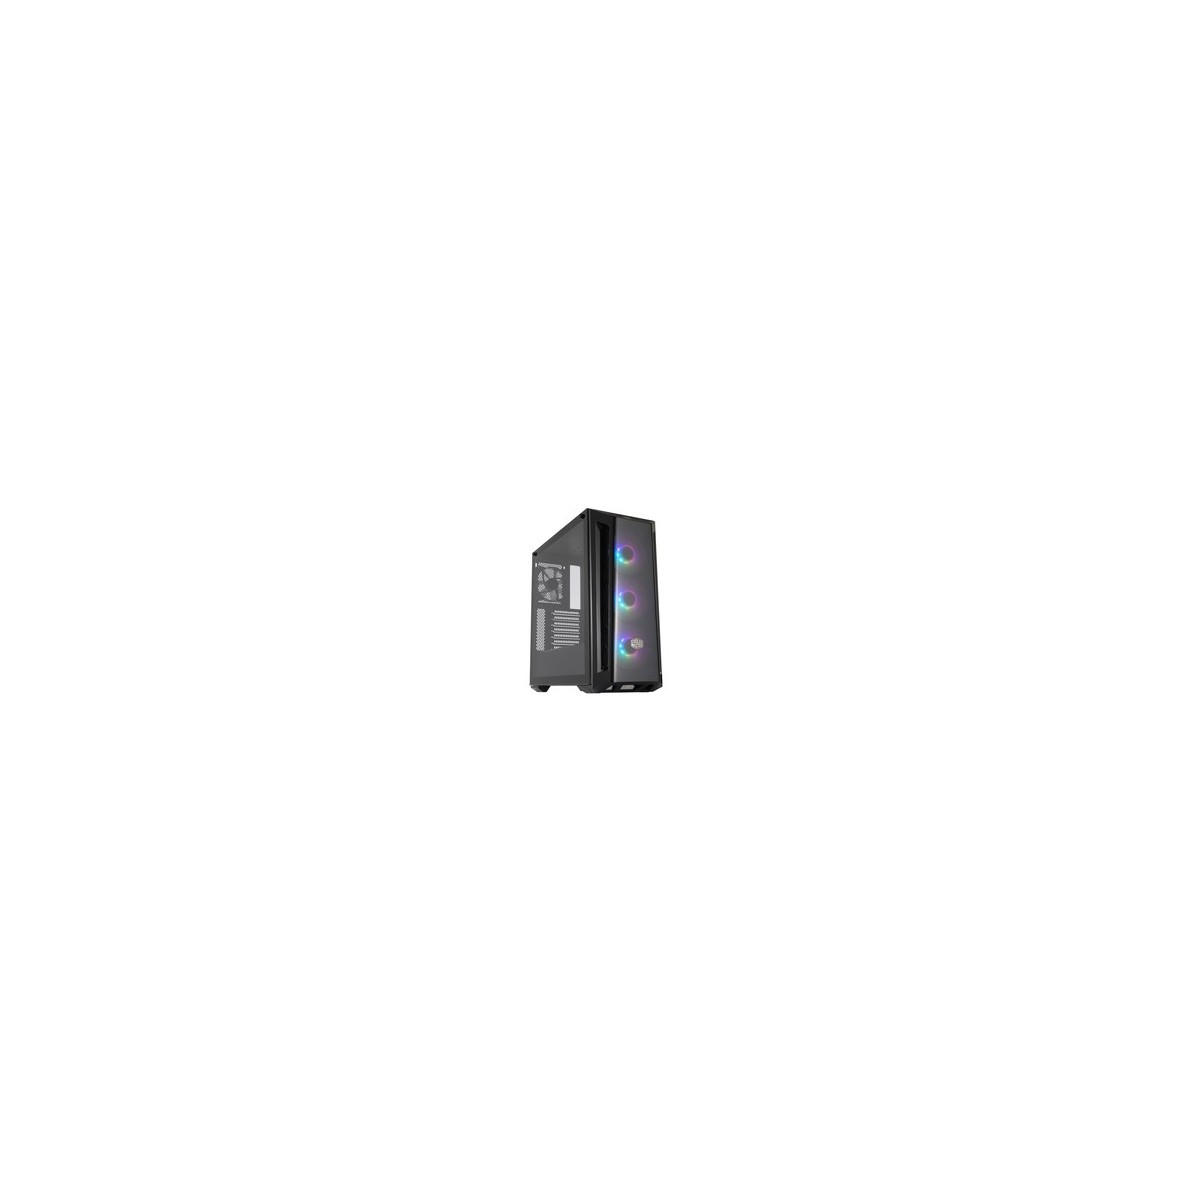 Cooler Master MasterBox MB520 ARGB - Midi Tower - PC - Black - ATX - EATX - micro ATX - Mini-ITX - SSI CEB - Plastic - Steel - T